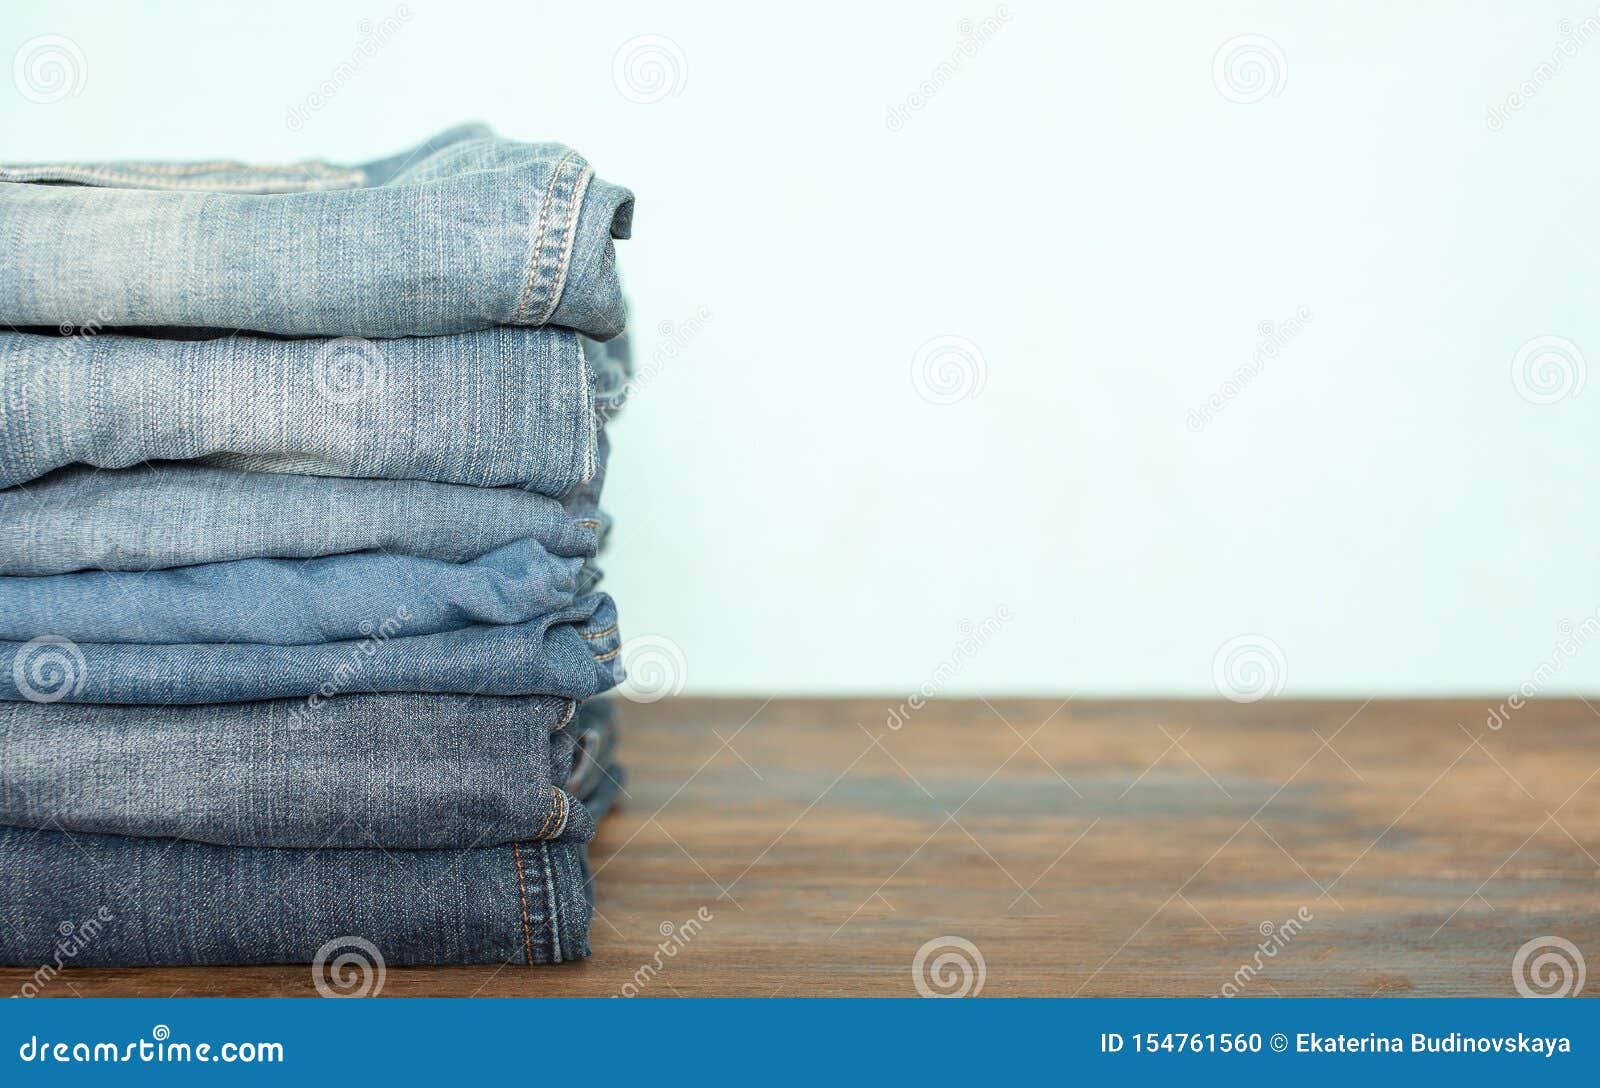 De stapel van jeansbroeken stock foto. Image of broek - 154761560